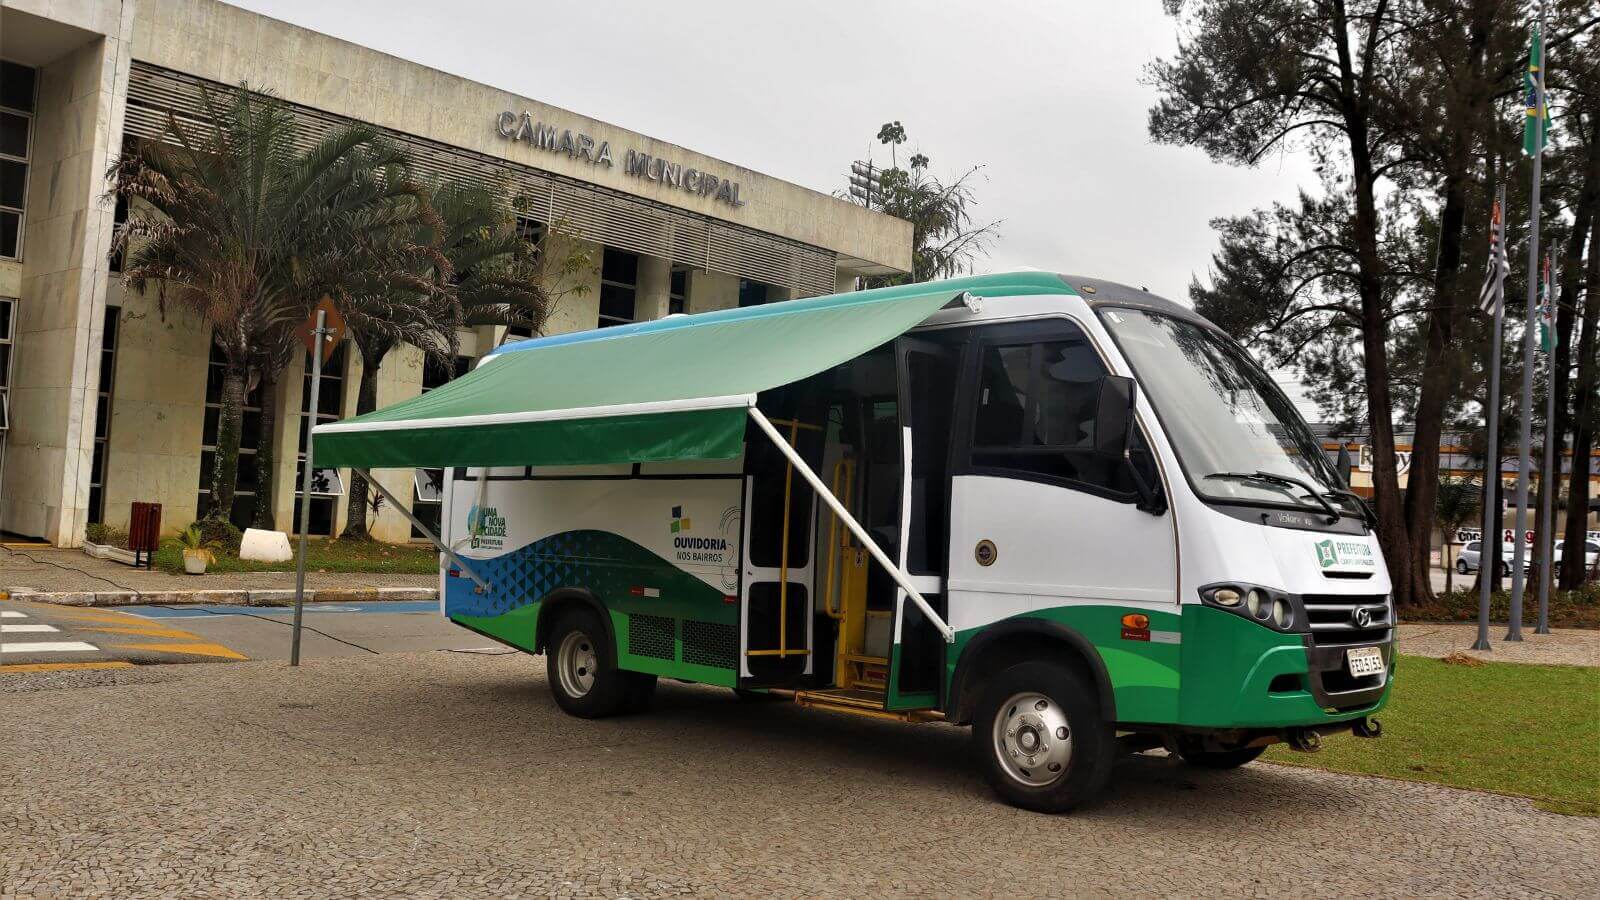 Ônibus adaptado da Prefeitura de Campo Limpo Paulista estacionado em frente ao prédio da Câmara Municipal da cidade.